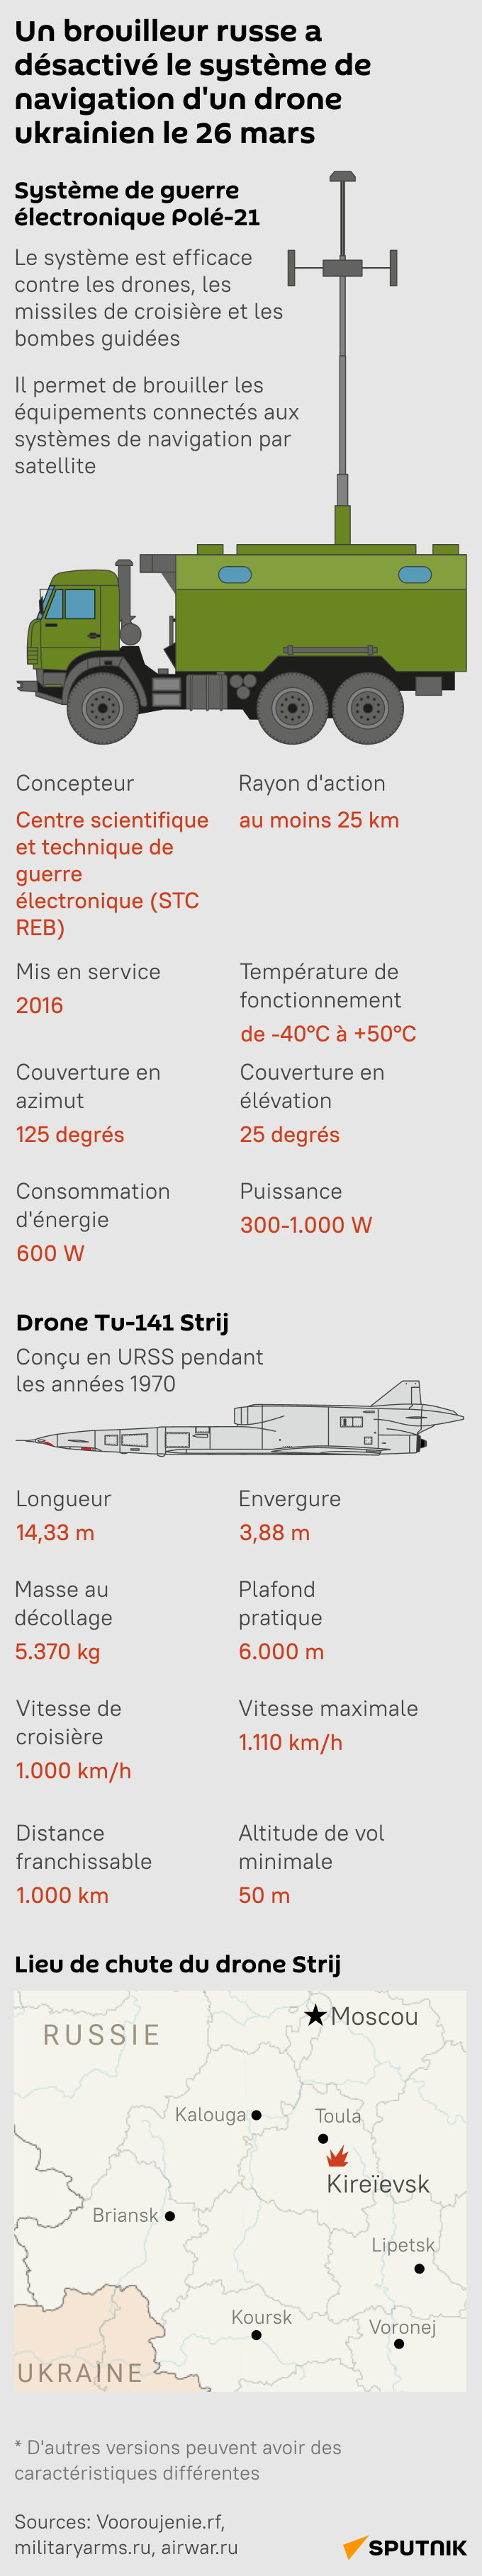 Un brouilleur russe Polé-21 neutralise un drone ukrainien Tu-141 - Sputnik Afrique